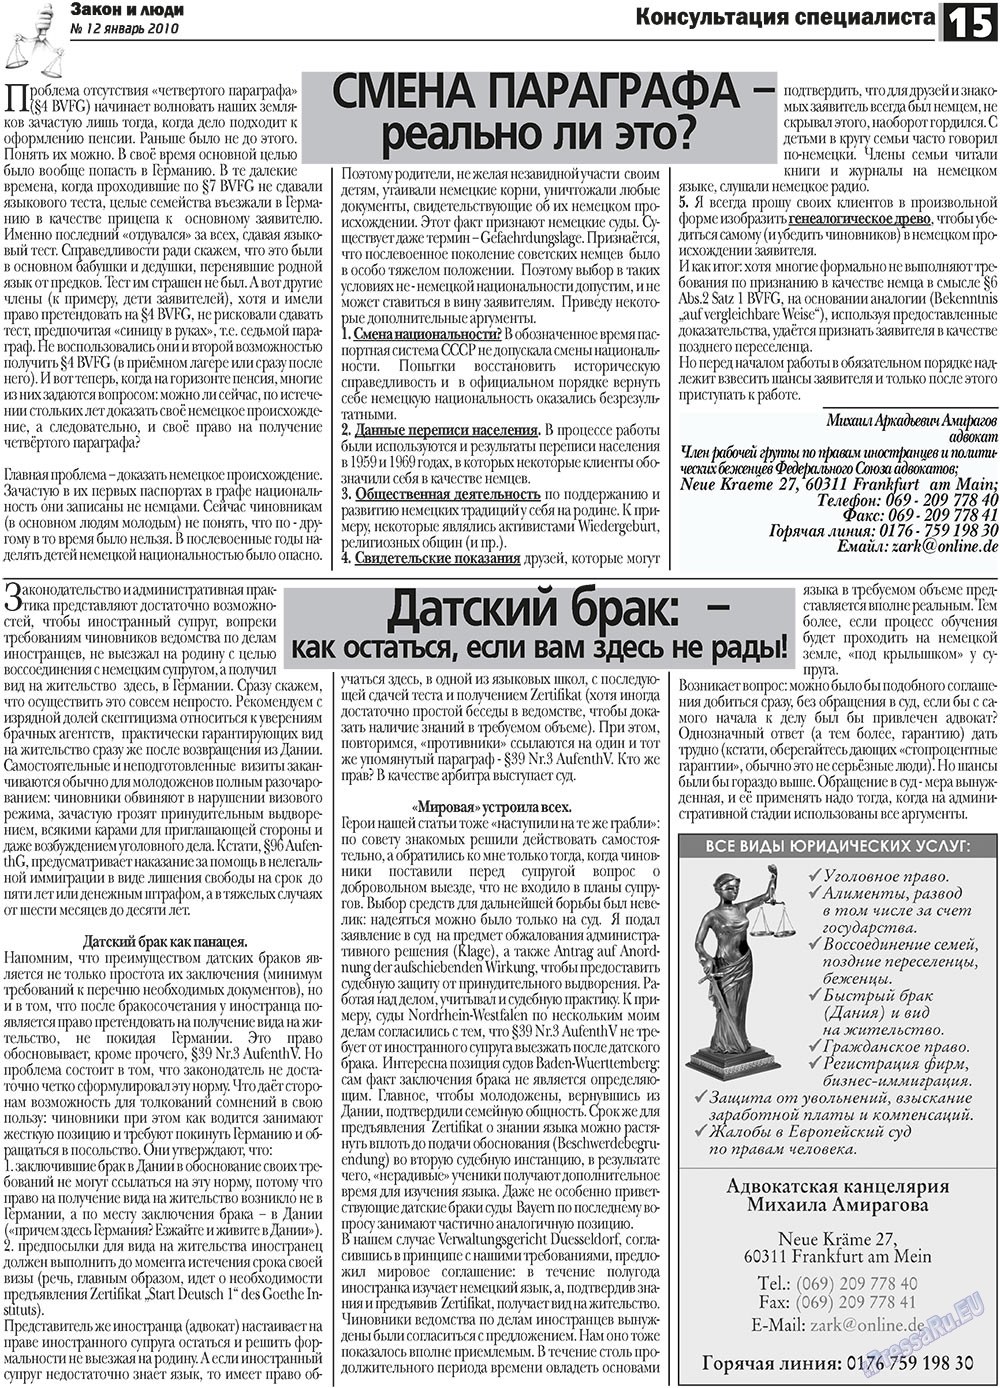 Закон и люди, газета. 2011 №1 стр.15